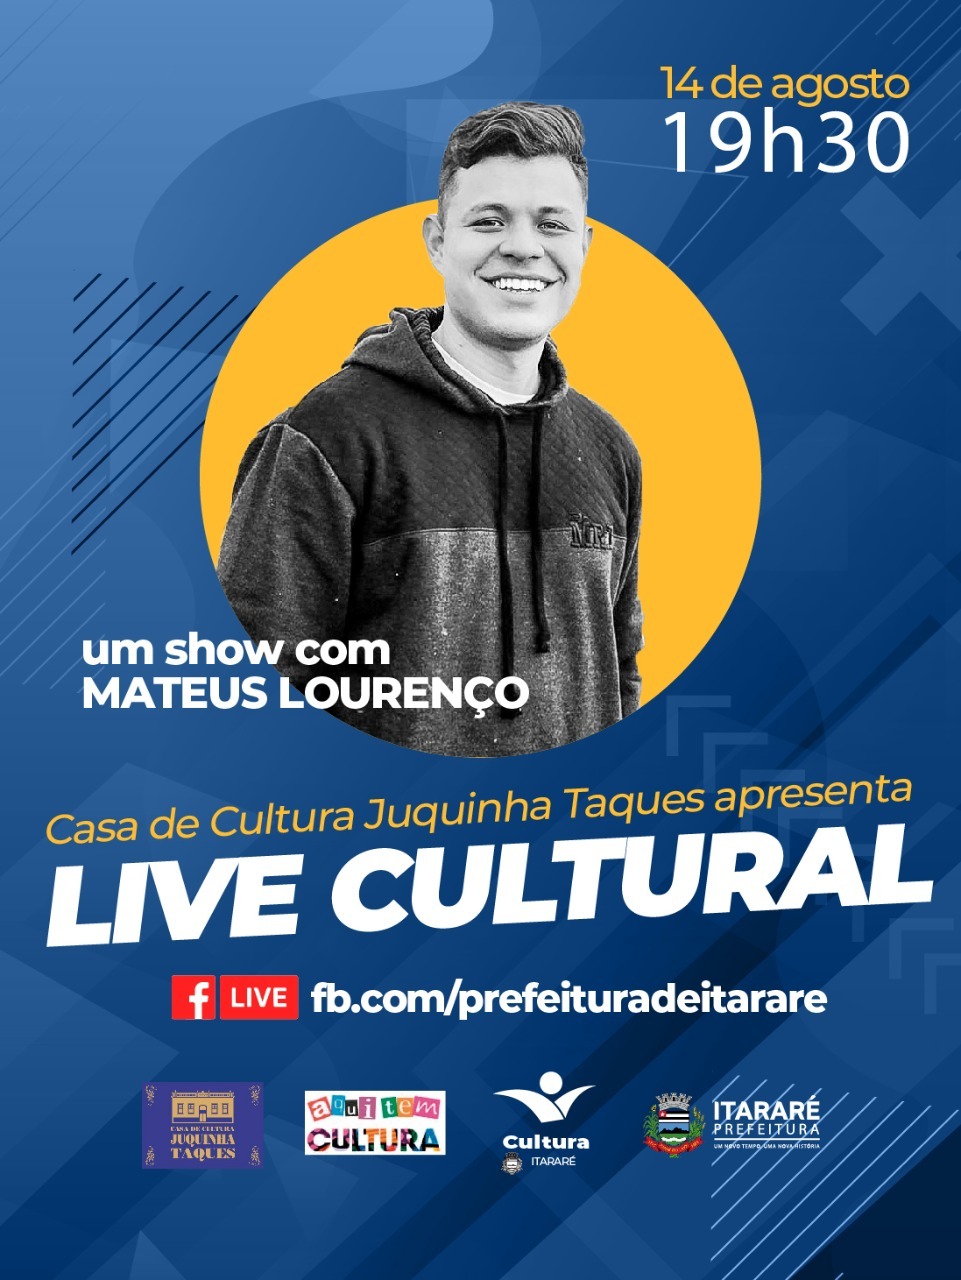 Mateus Lourenço se apresenta nesta sexta-feira (14) na Live Cultural da Prefeitura de Itararé (SP)